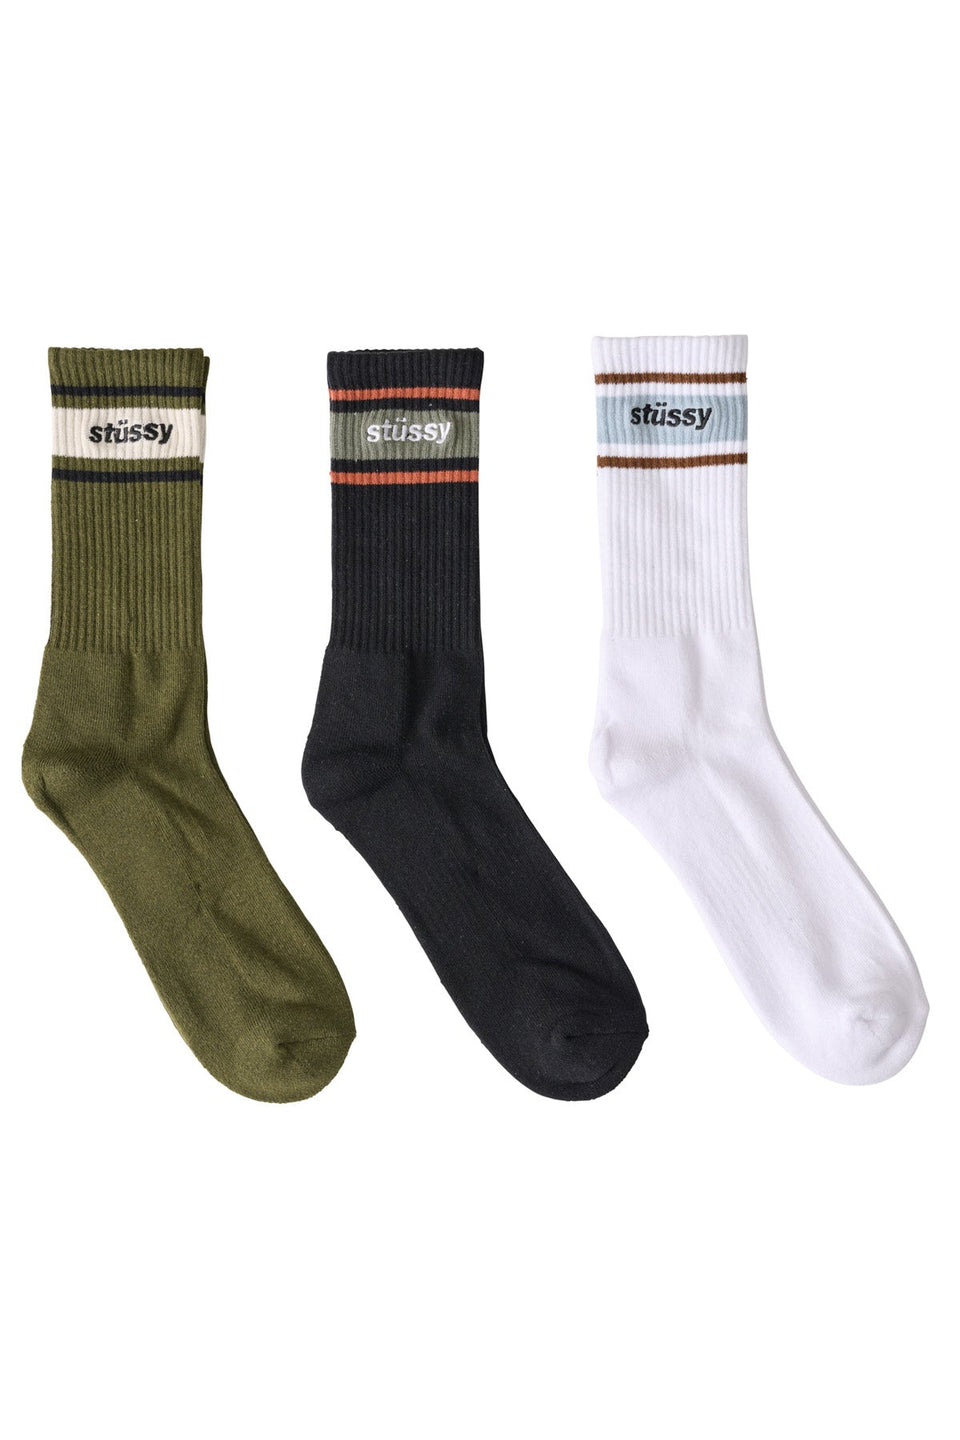 Stussy Men's Italic Stripe Socks 3pk Multi